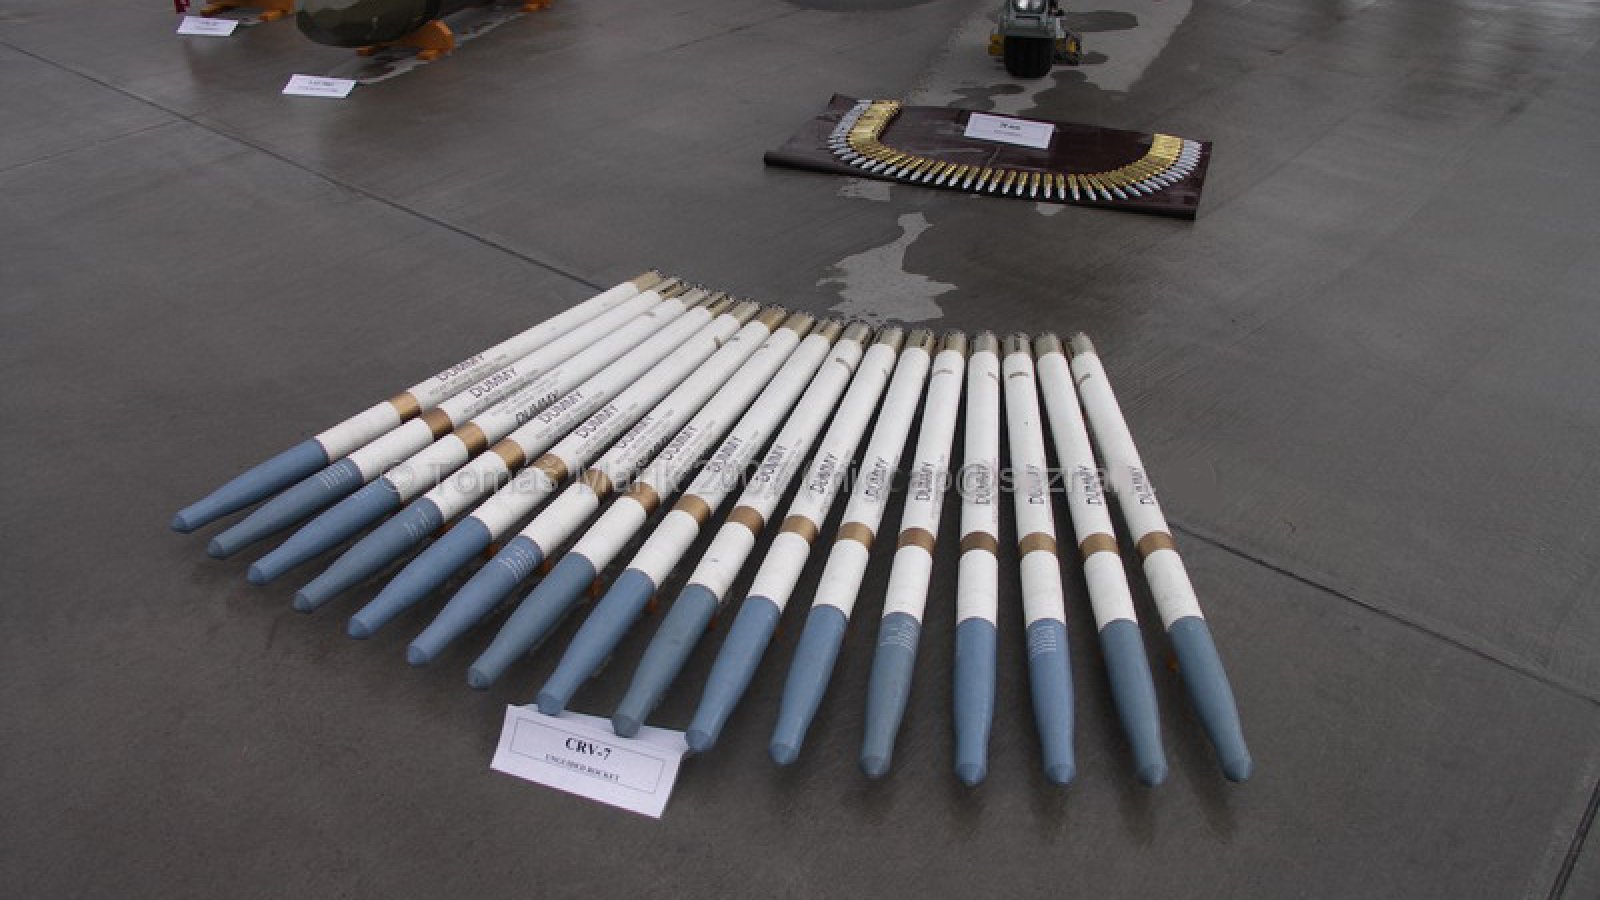 Канада может передать Украине ракеты CRV7 класса “воздух-земля“